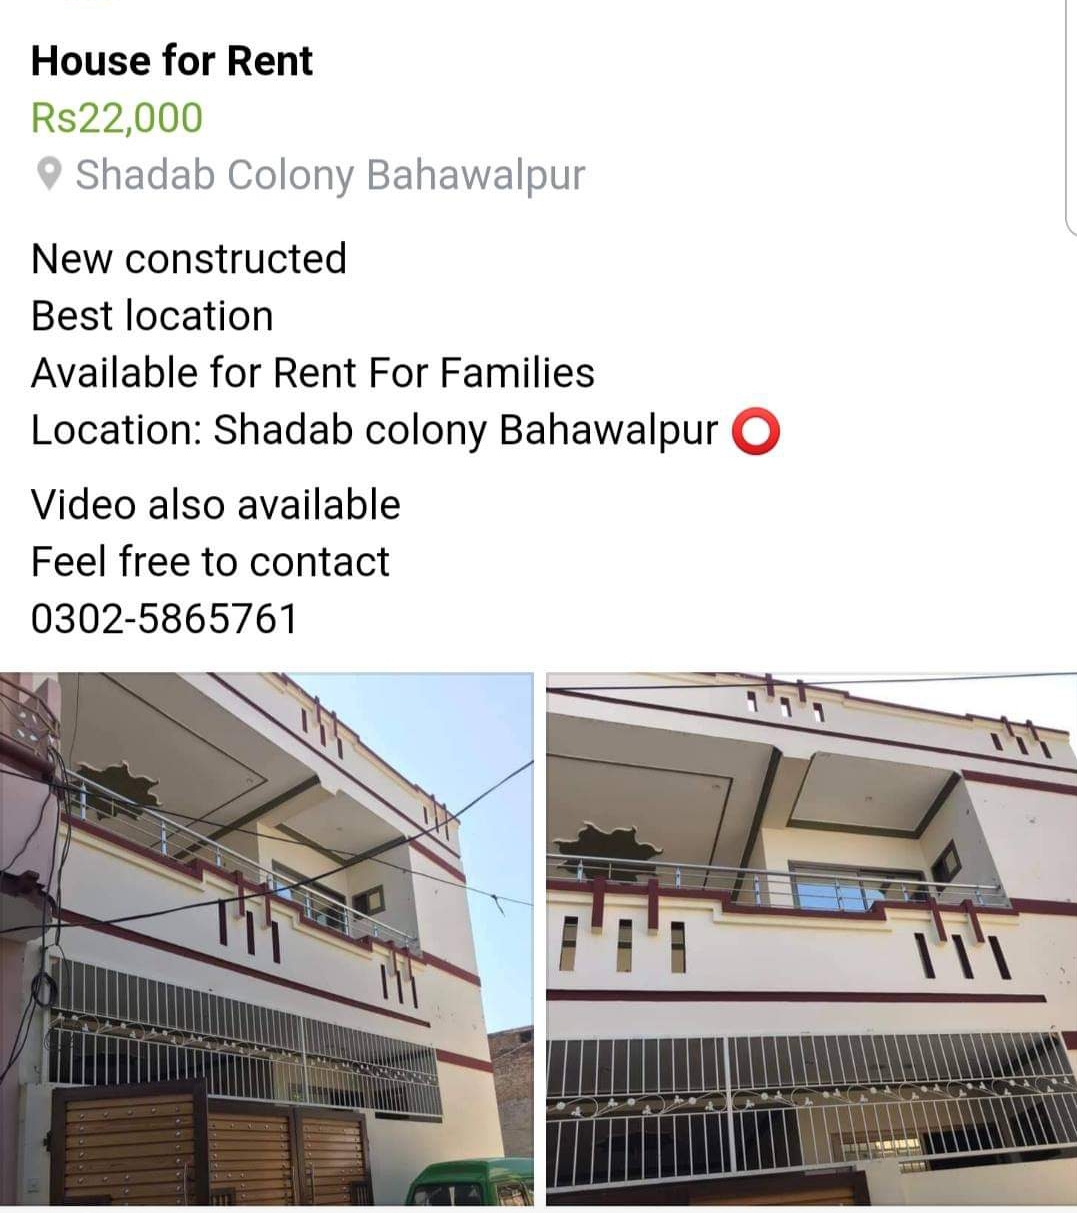 House for rent Shadab colony Bahawalpur